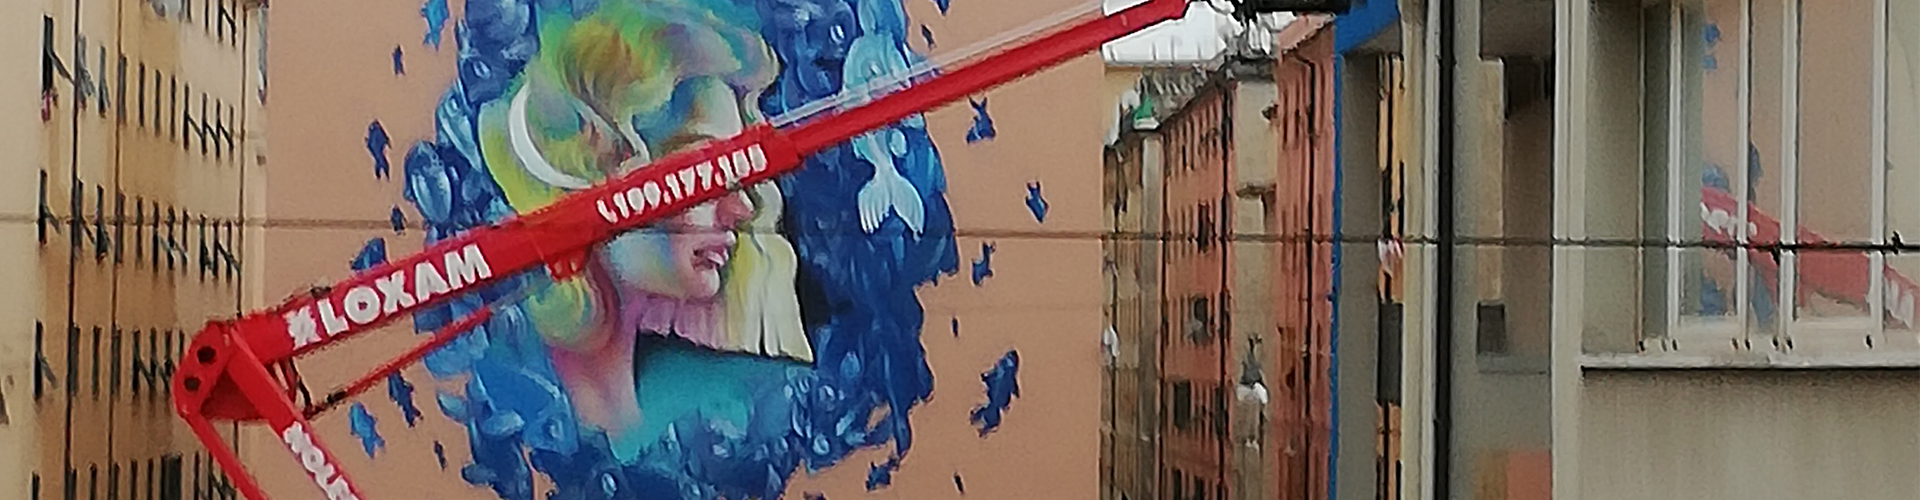 Loxam: street art project “On the wall” in Genova